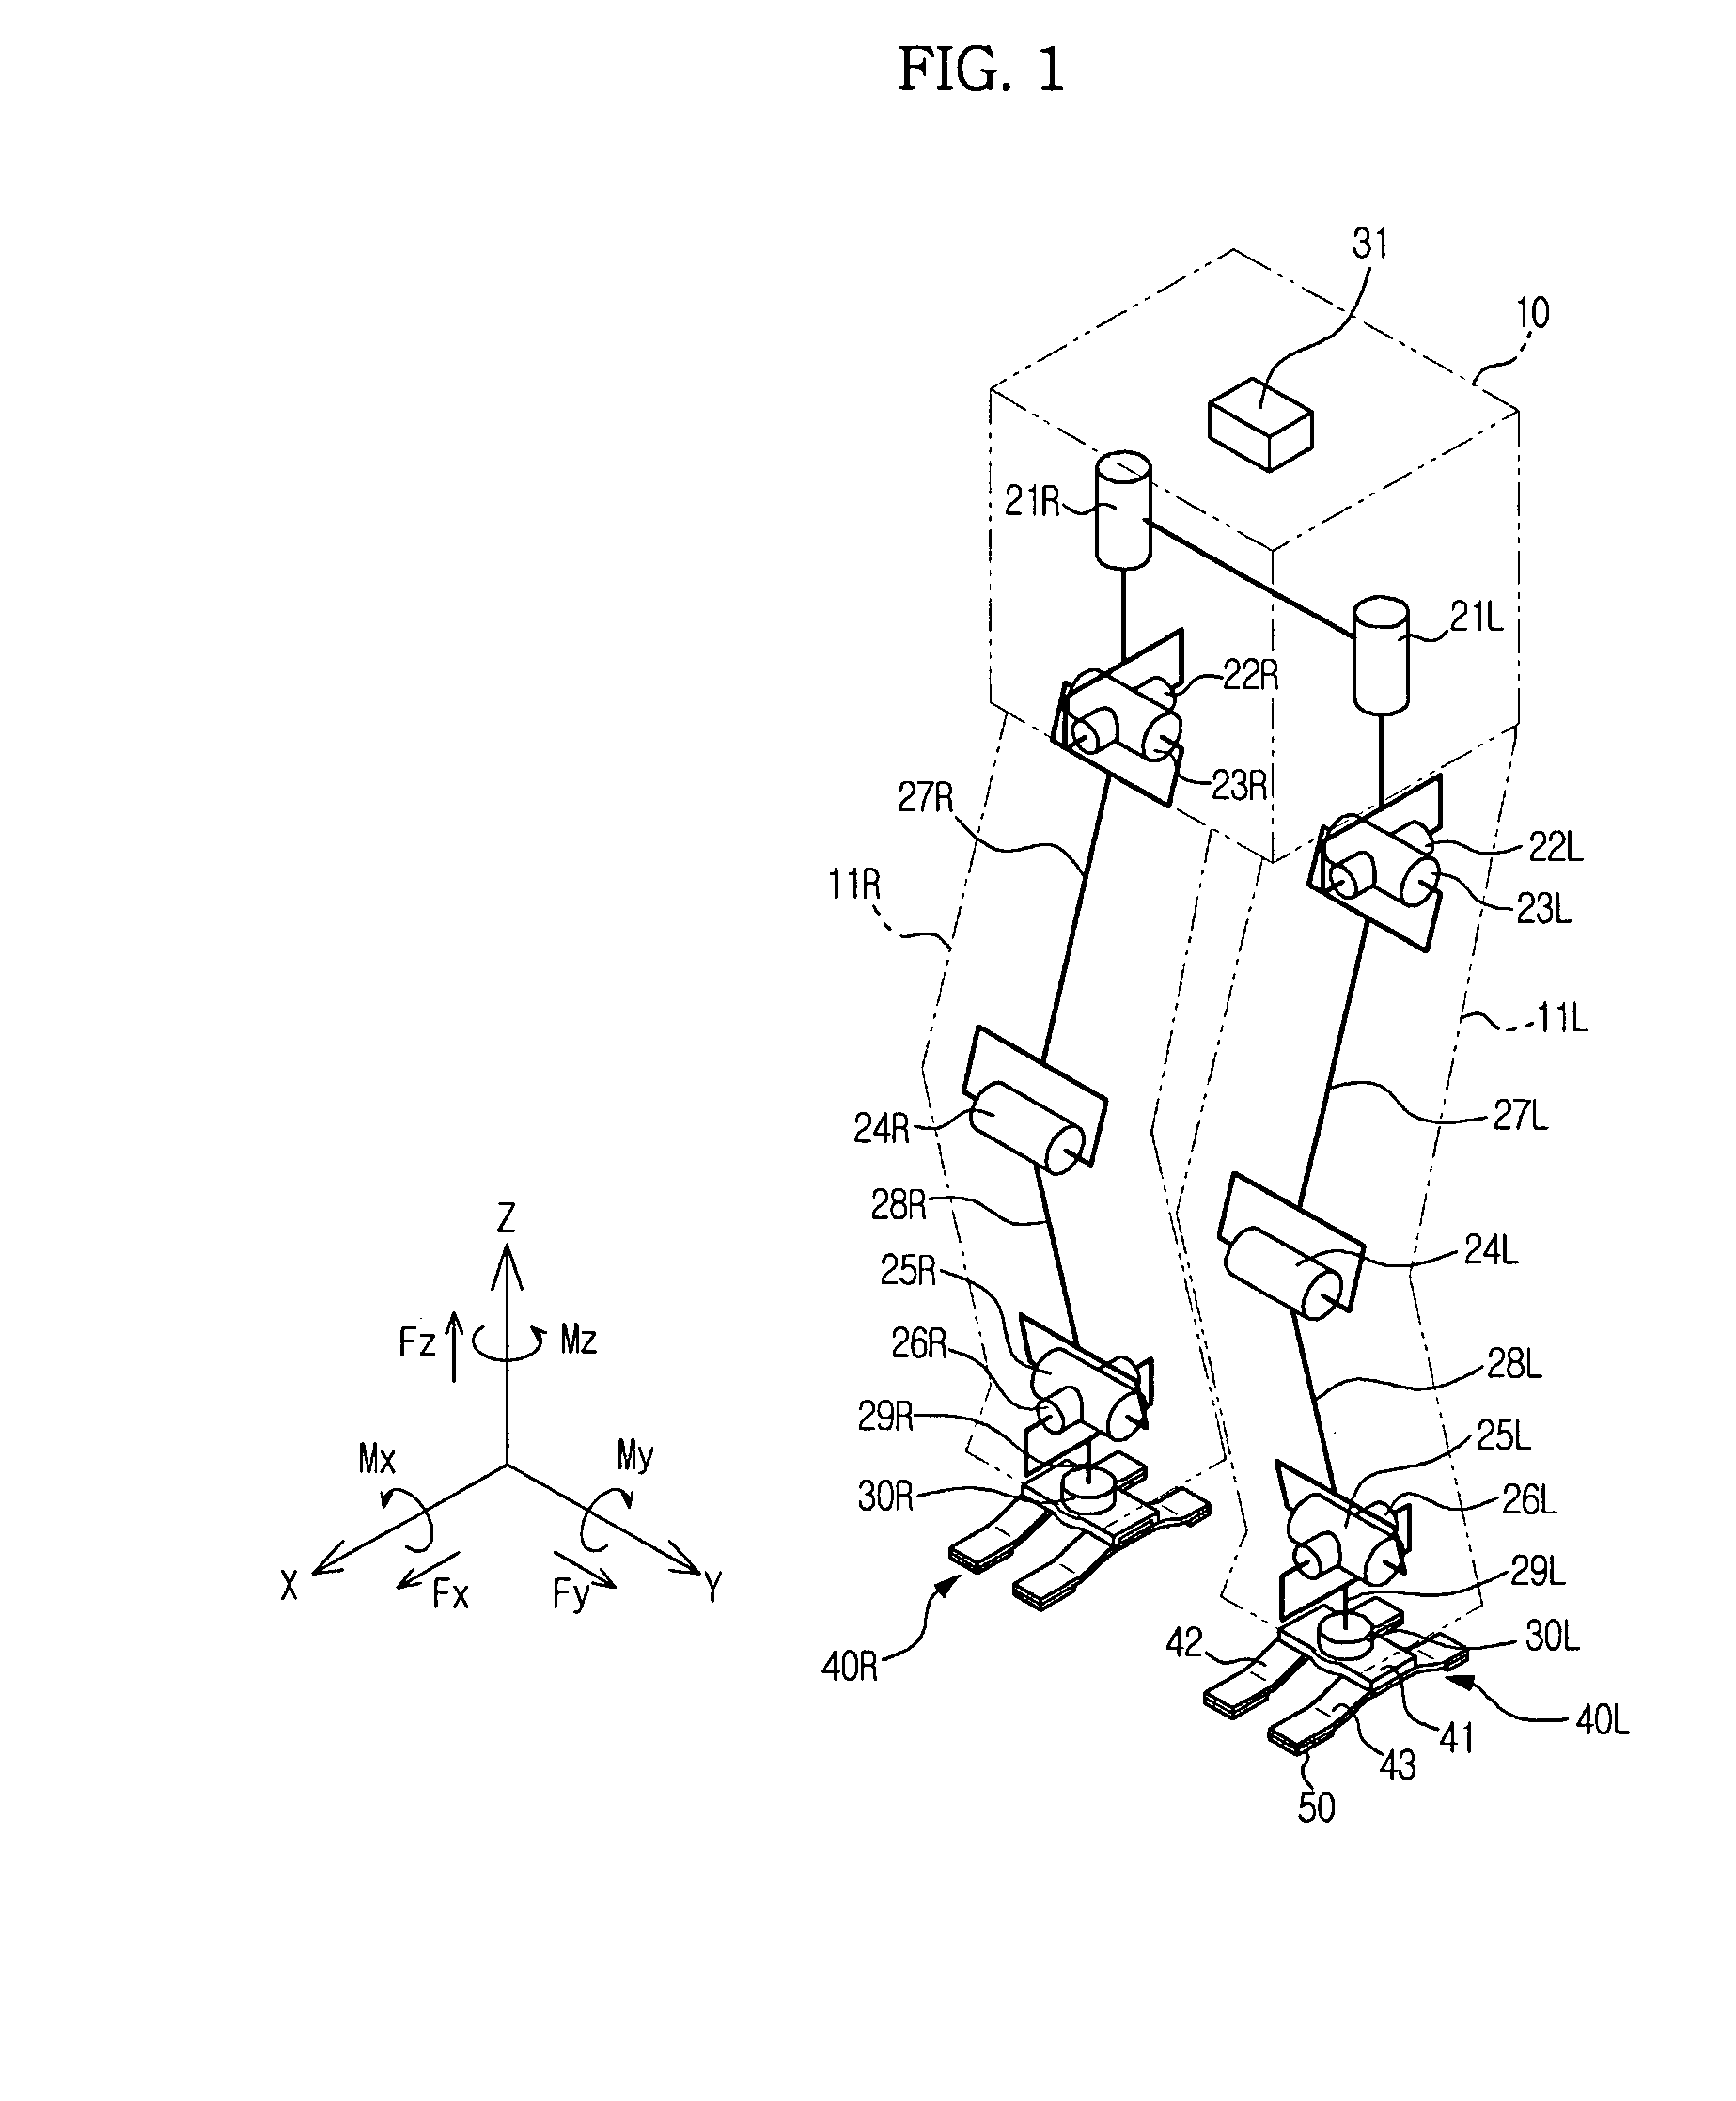 Foot of walking robot and walking robot having the same